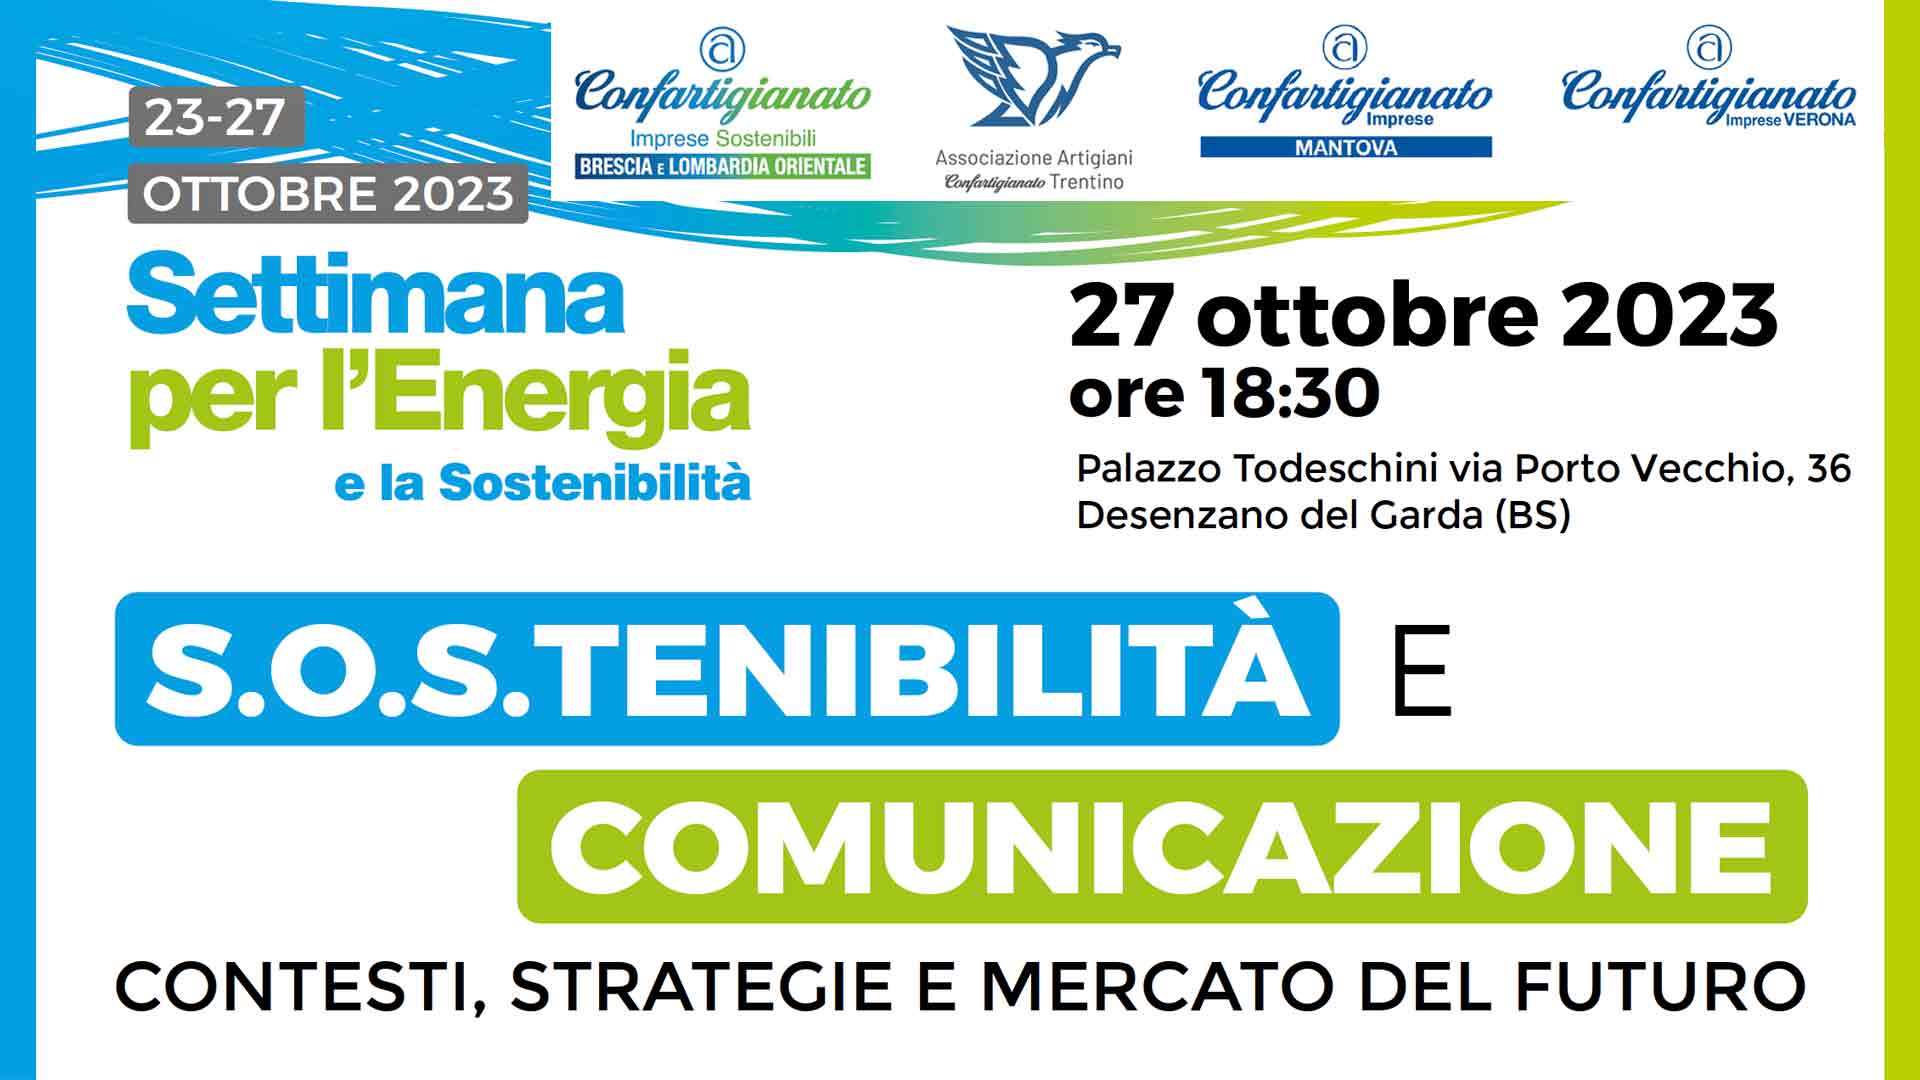 EVENTO – Settimana per l’Energia e la Sostenibilità per guidare le Mpi nella transizione green: il 27 ottobre, convegno a Desenzano del Garda. Iscriviti per partecipare